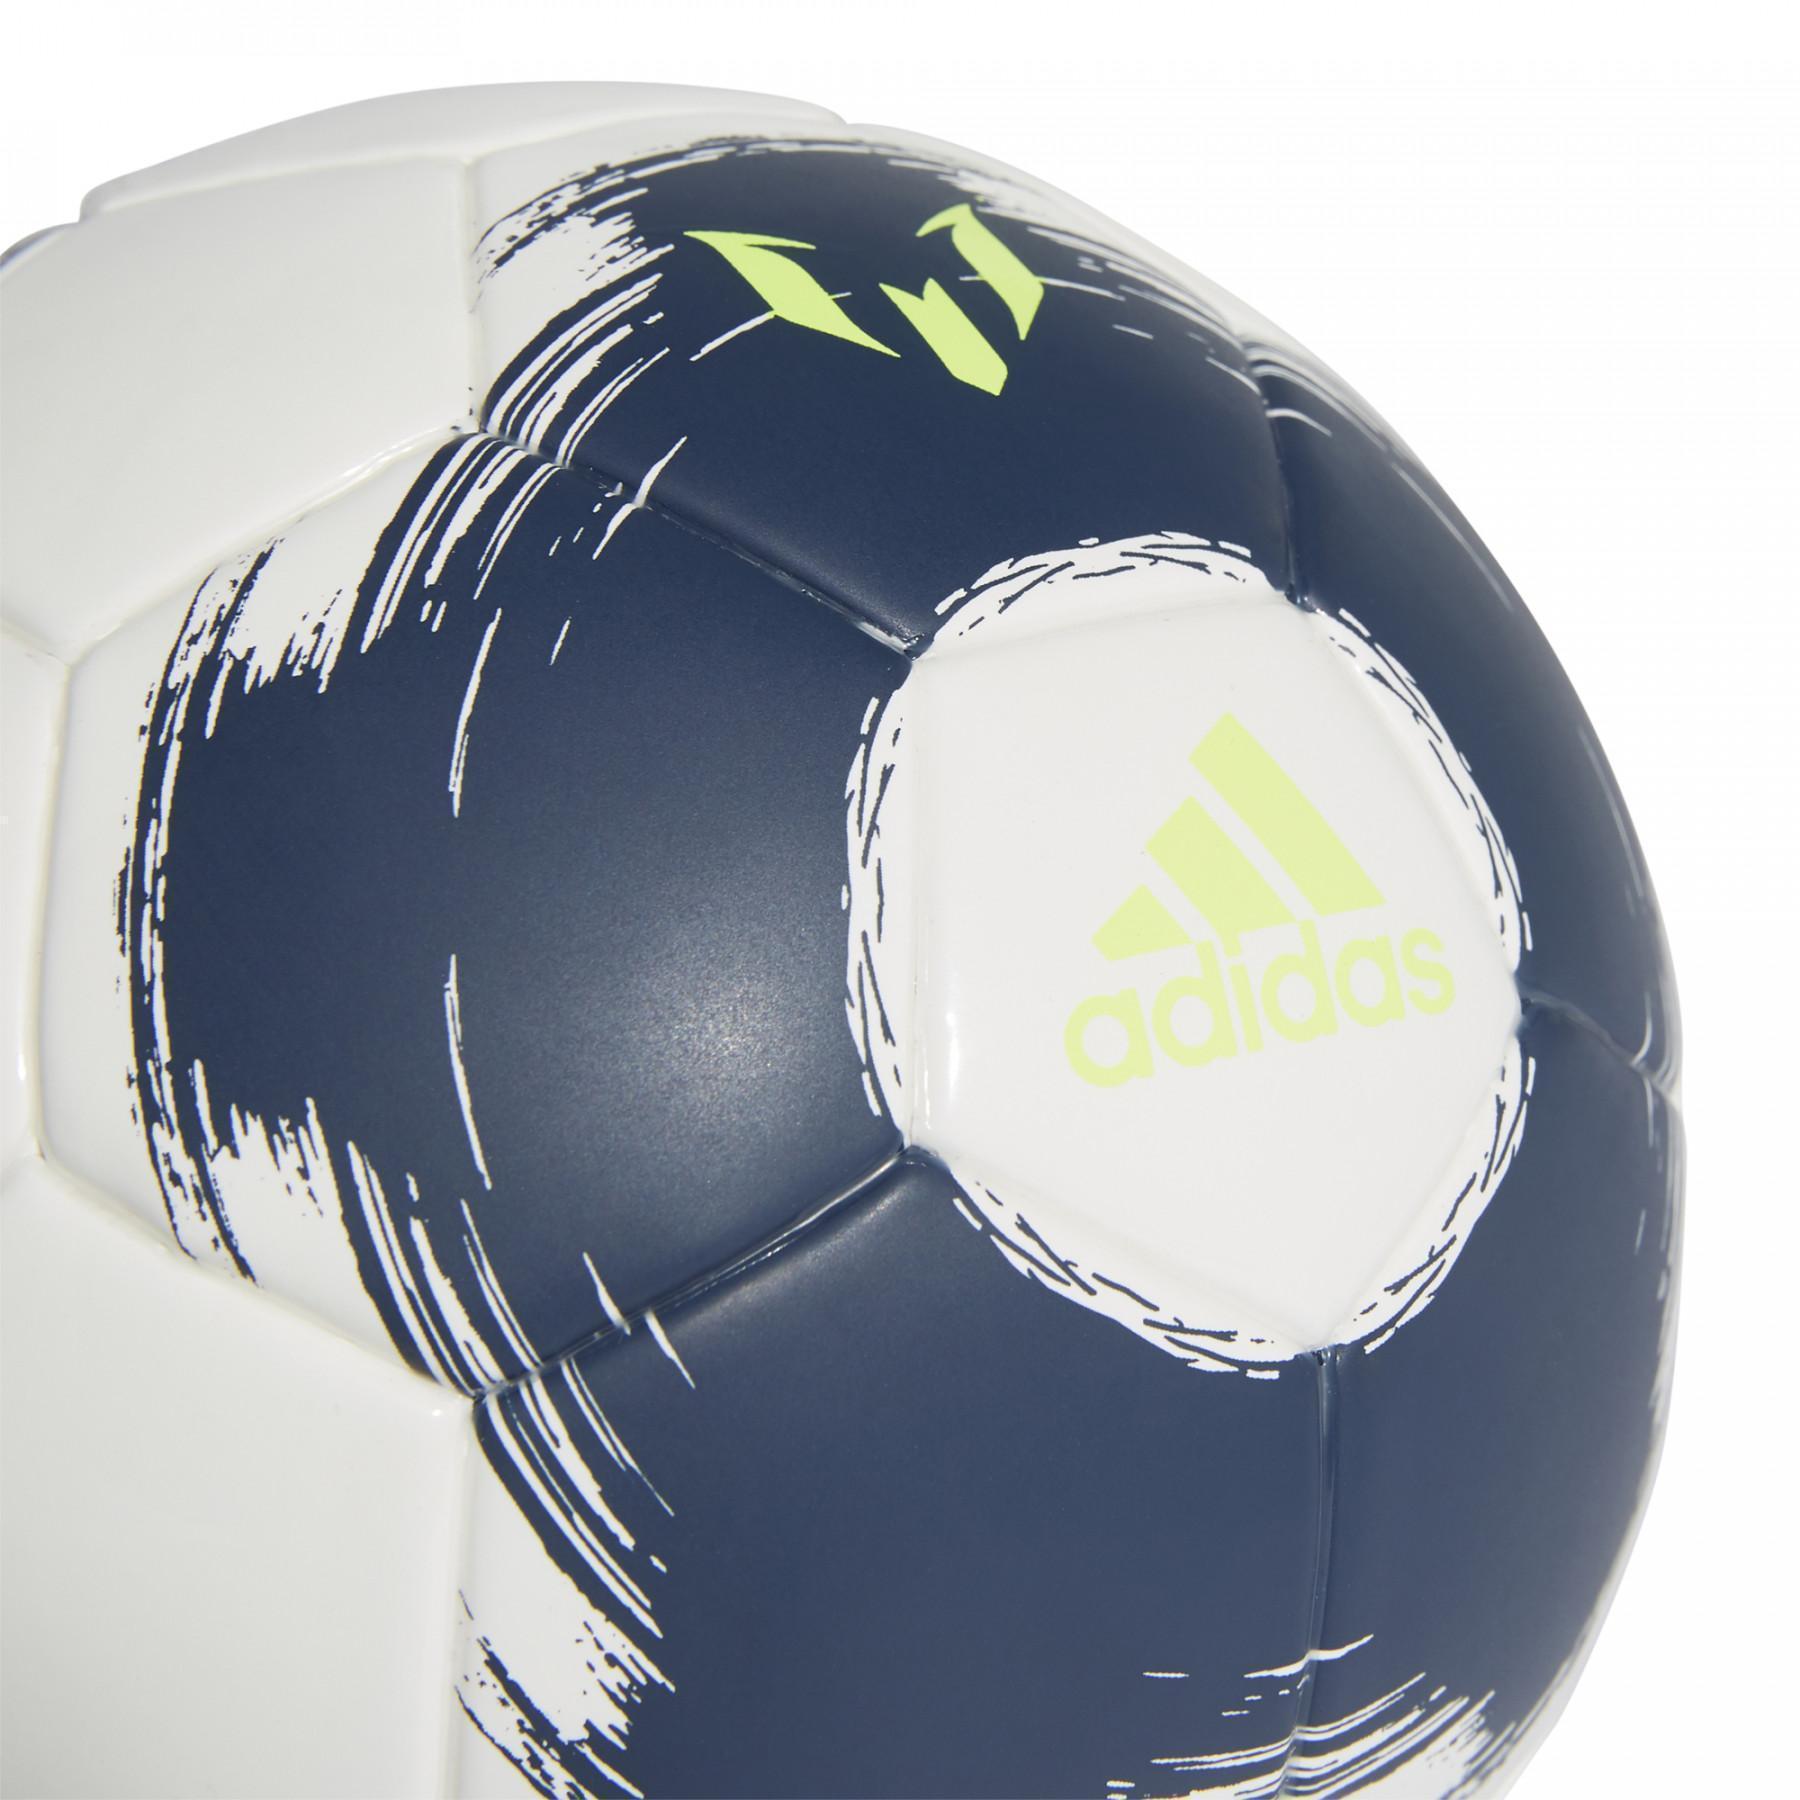 Balon adidas Mini Messi